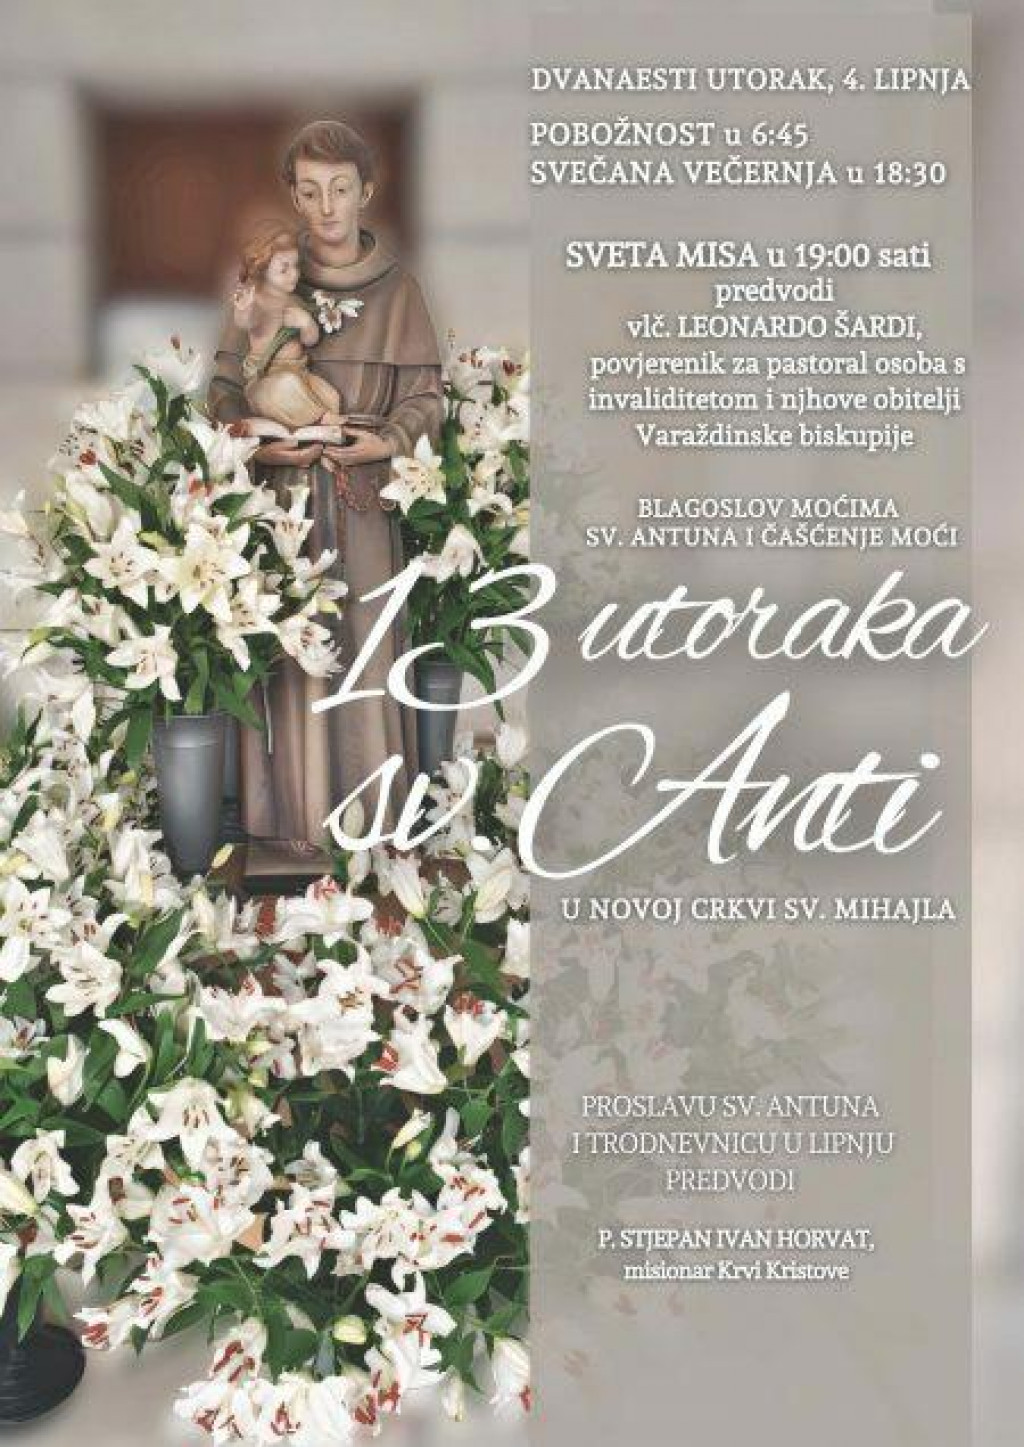 &lt;p&gt;Povjerenik za pastoral osoba s invaliditetom i njihovim obiteljima Varaždinske biskupije predvodi misu u župi sv. Mihajla u Dubrovniku&lt;/p&gt;